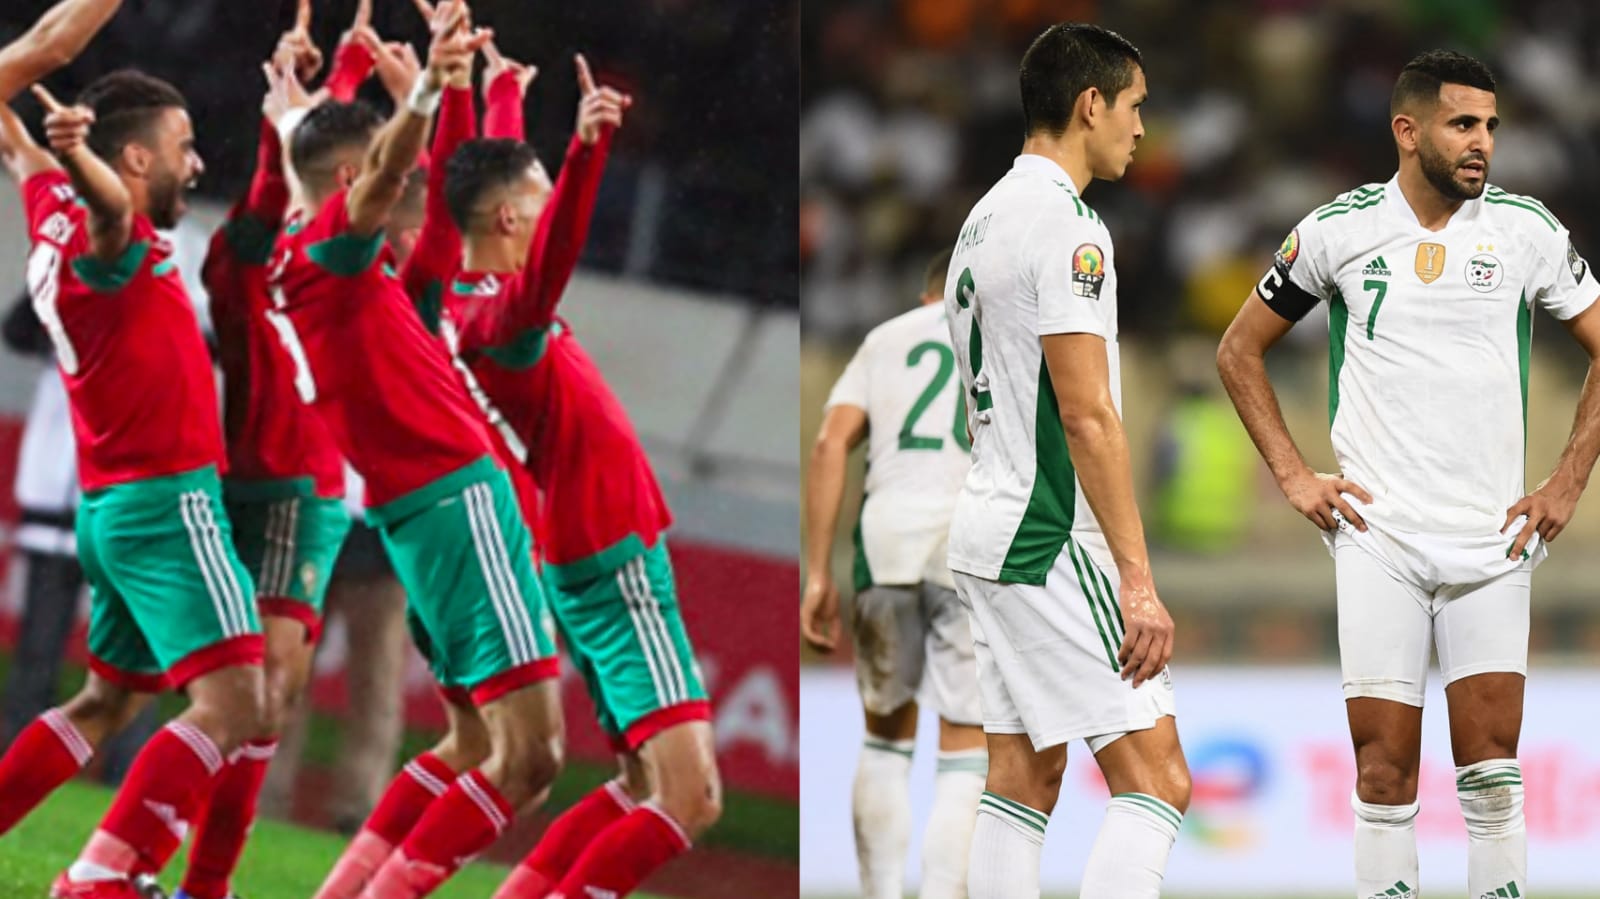 رسميا الجزائر تستضيف كأس أمم افريقيا وأنباء عن رفض دخول المنتخب المغربي